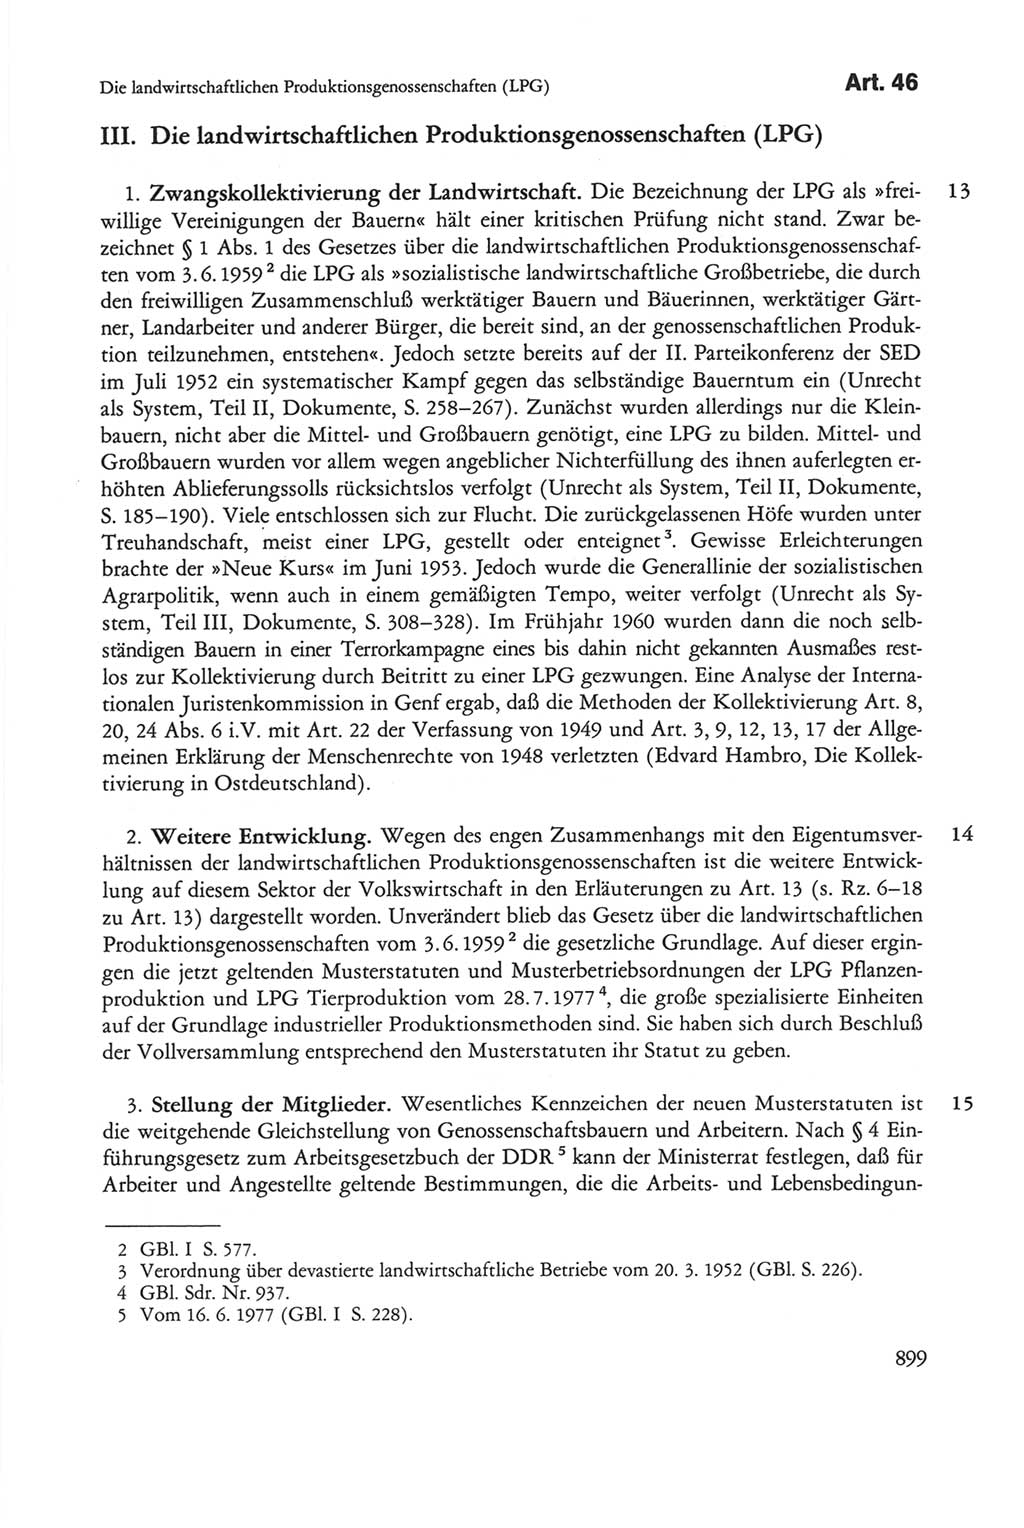 Die sozialistische Verfassung der Deutschen Demokratischen Republik (DDR), Kommentar mit einem Nachtrag 1997, Seite 899 (Soz. Verf. DDR Komm. Nachtr. 1997, S. 899)